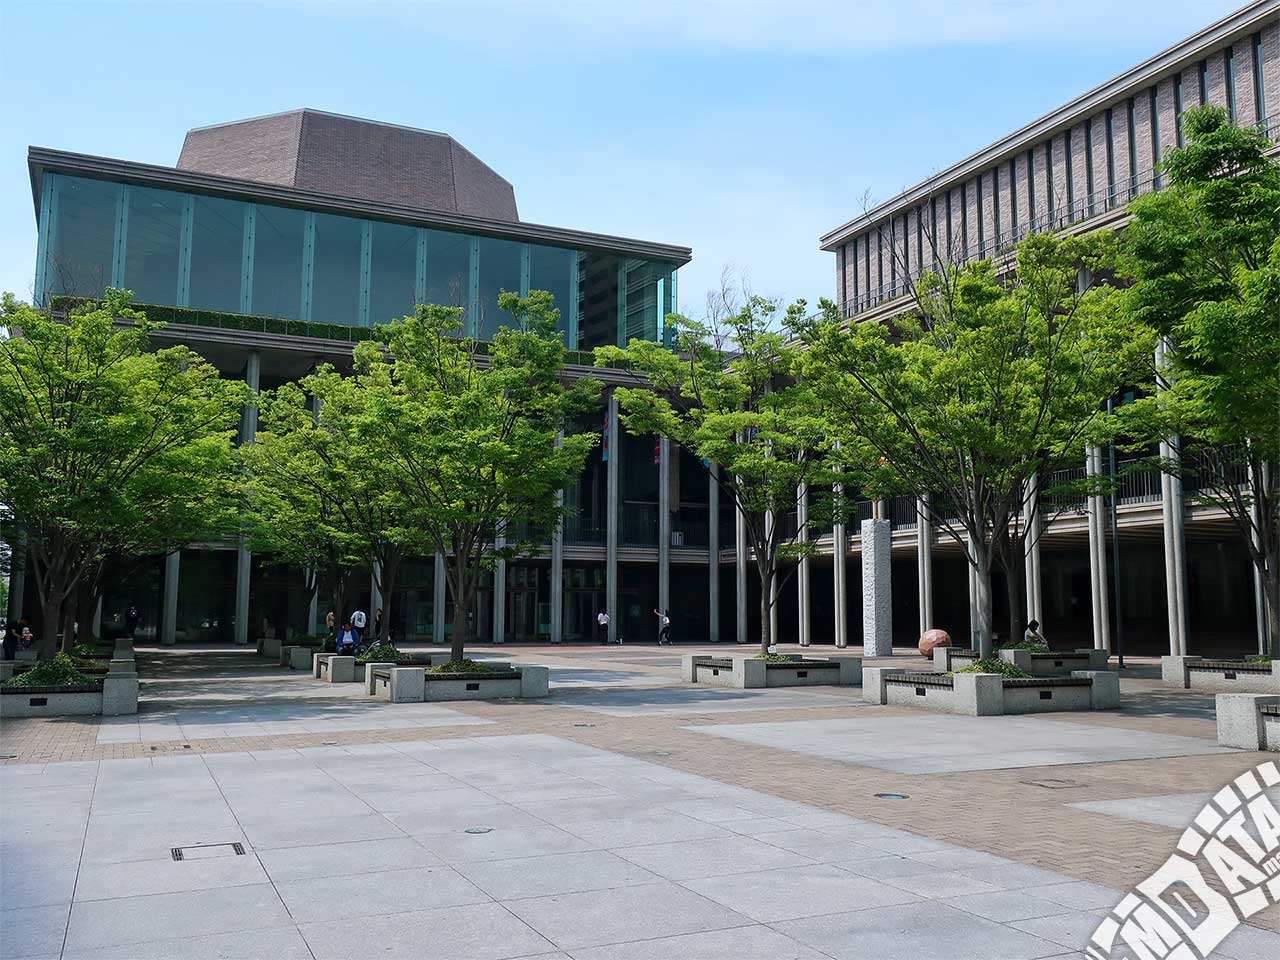 兵庫県立芸術文化センター KOBELCO大ホールの写真 撮影日:2019/6/4 Photo taken on 2019/06/04